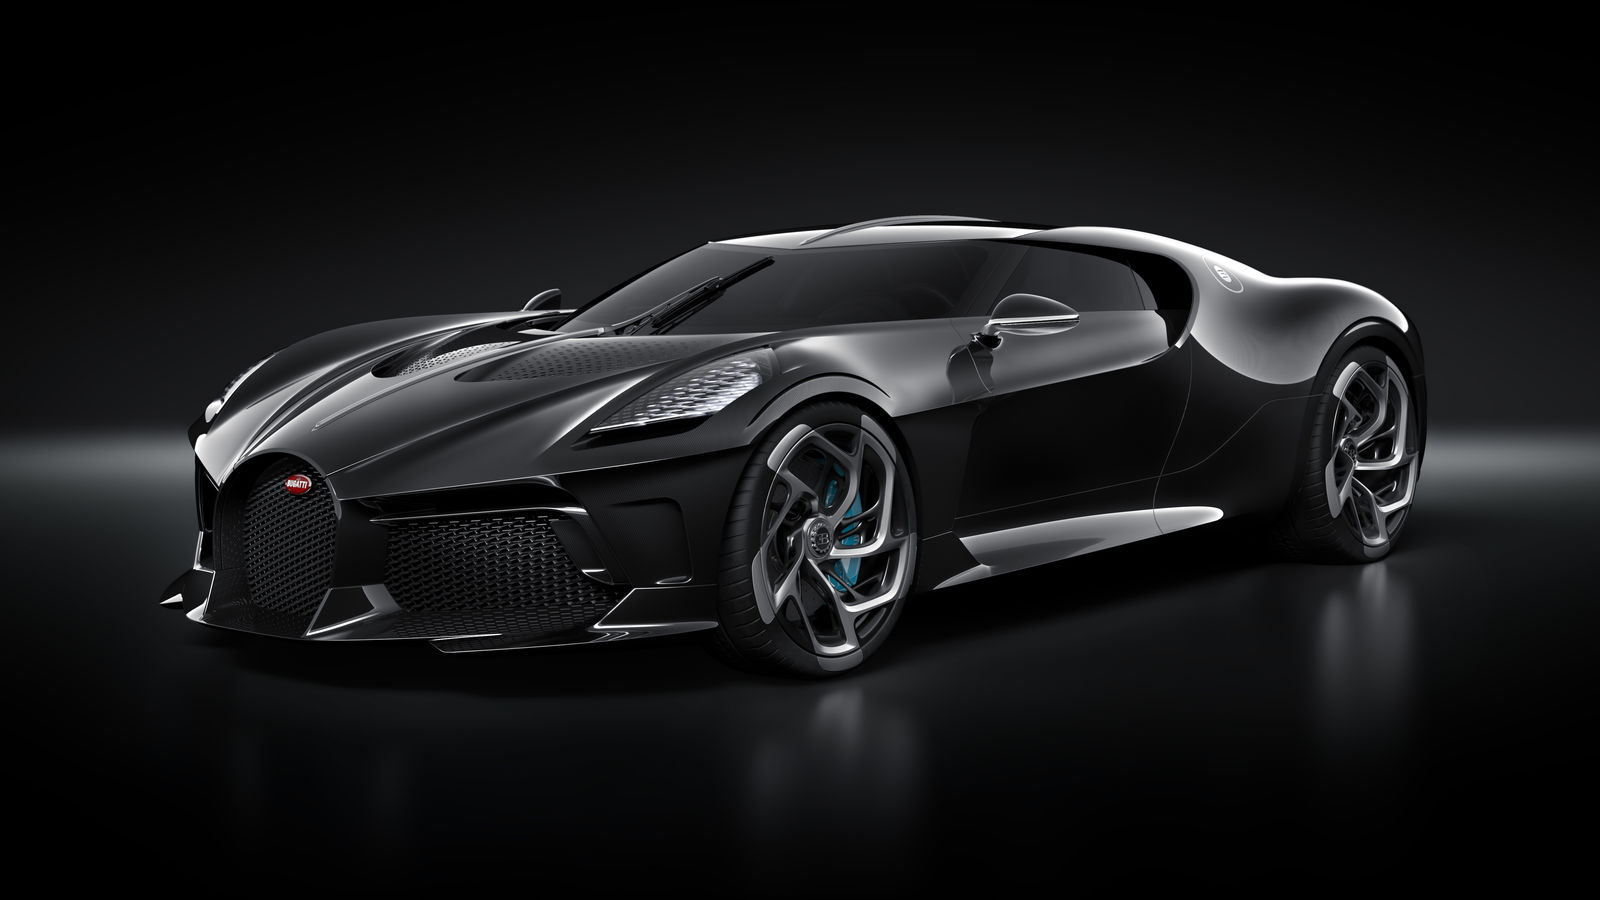 specifications and price of Bugatti La Voiture Noire in Nigeria